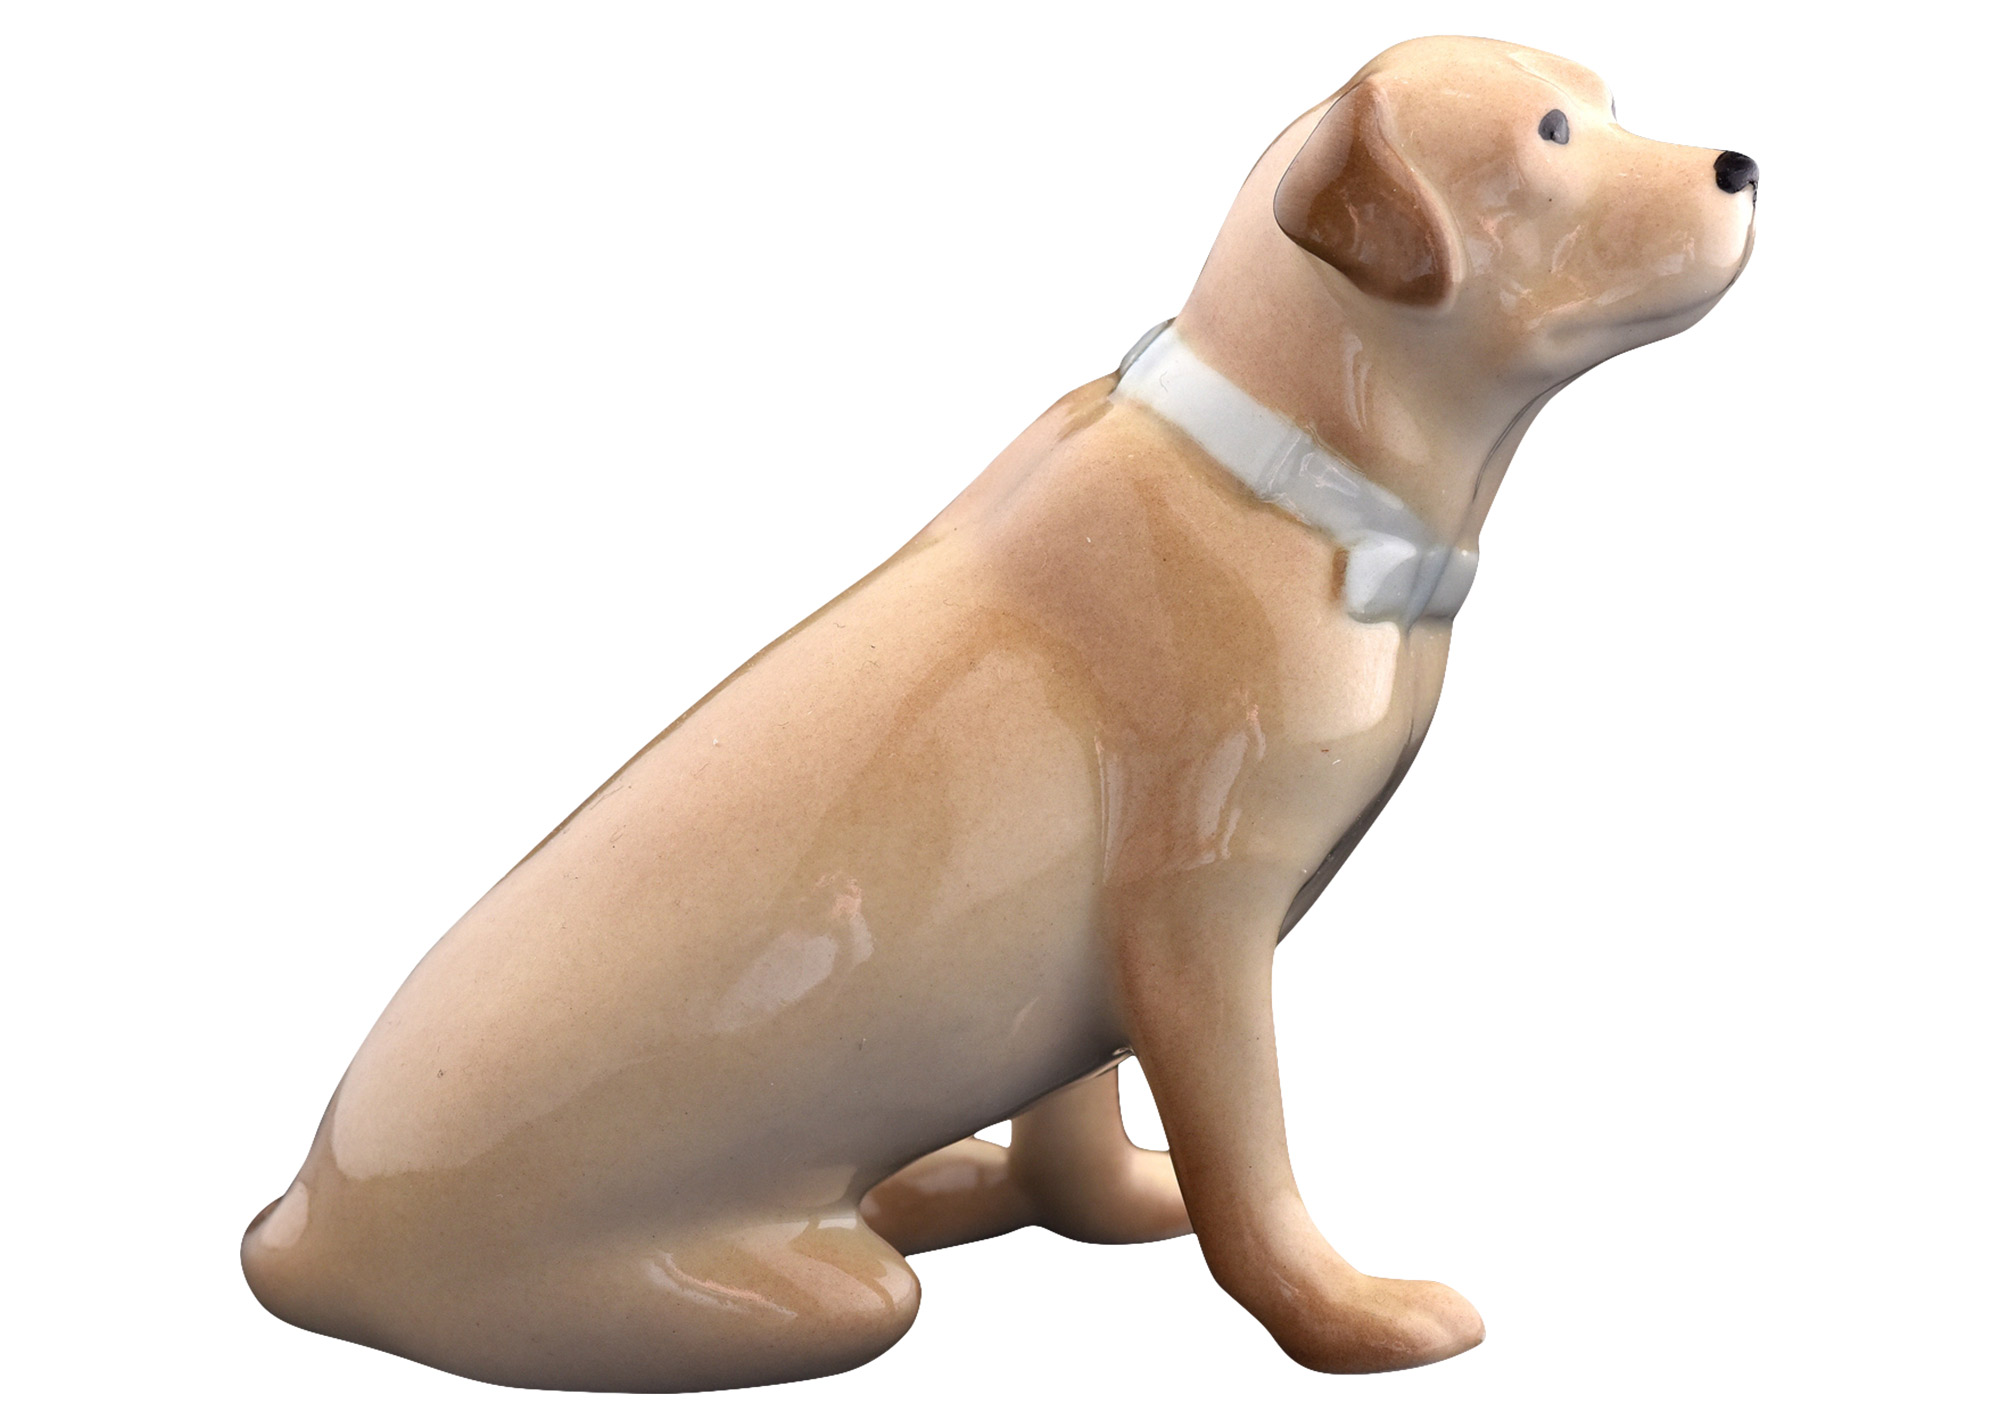 Buy Fawn Labrador Retriever Porcelain Figurine 3.5" at GoldenCockerel.com